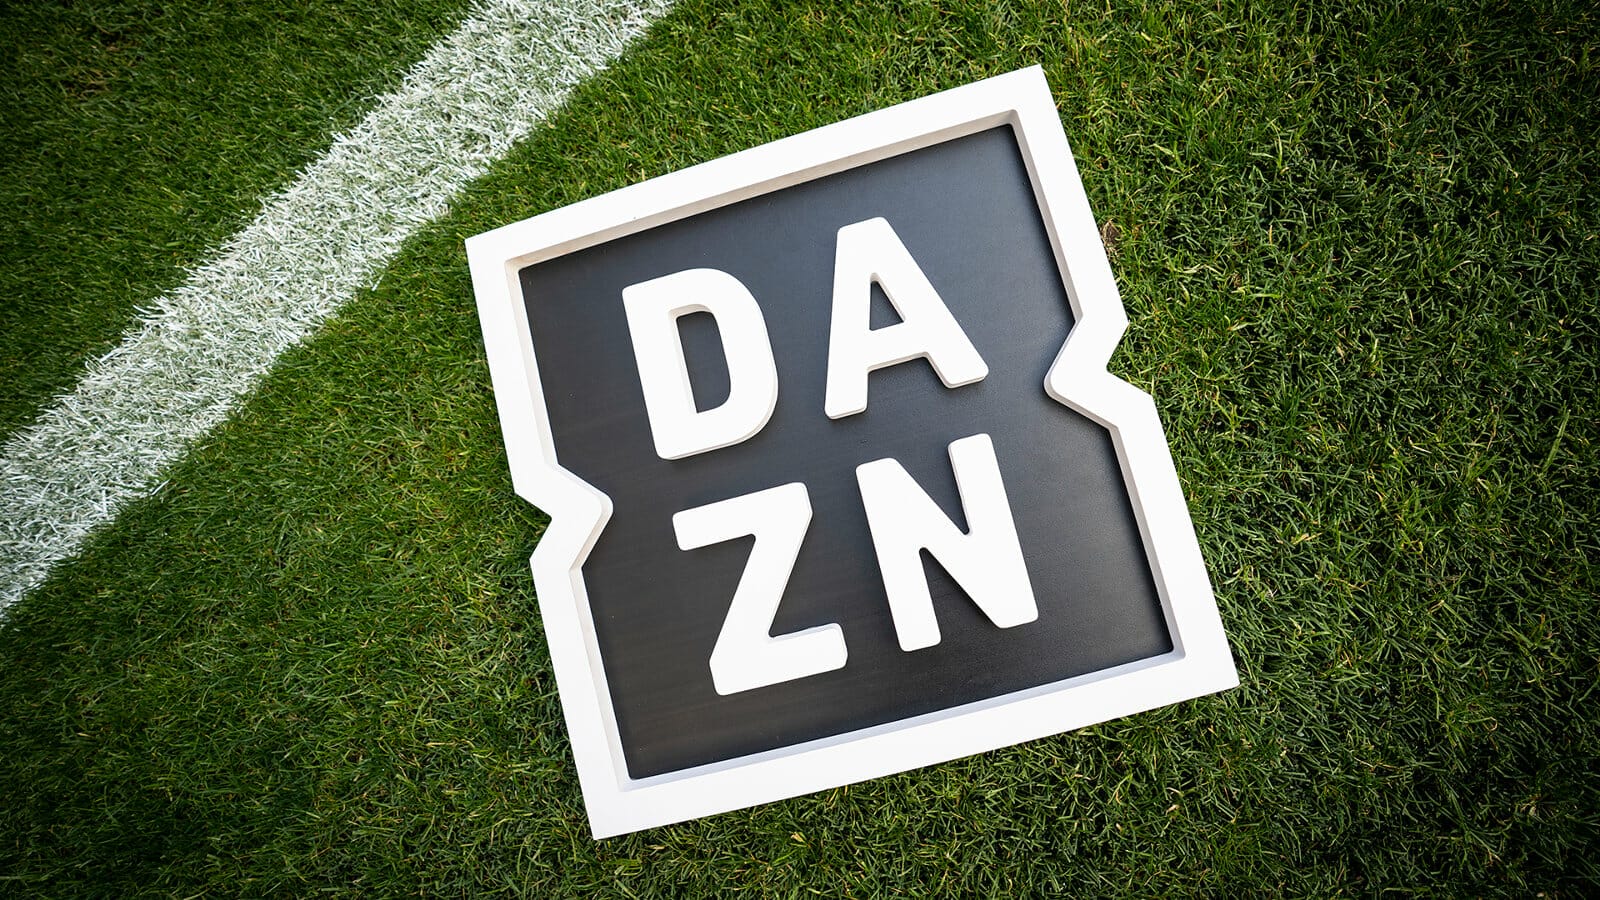 DAZN Sport-Streaming-Anbieter übernimmt wohl BT Sport für 800 Mio